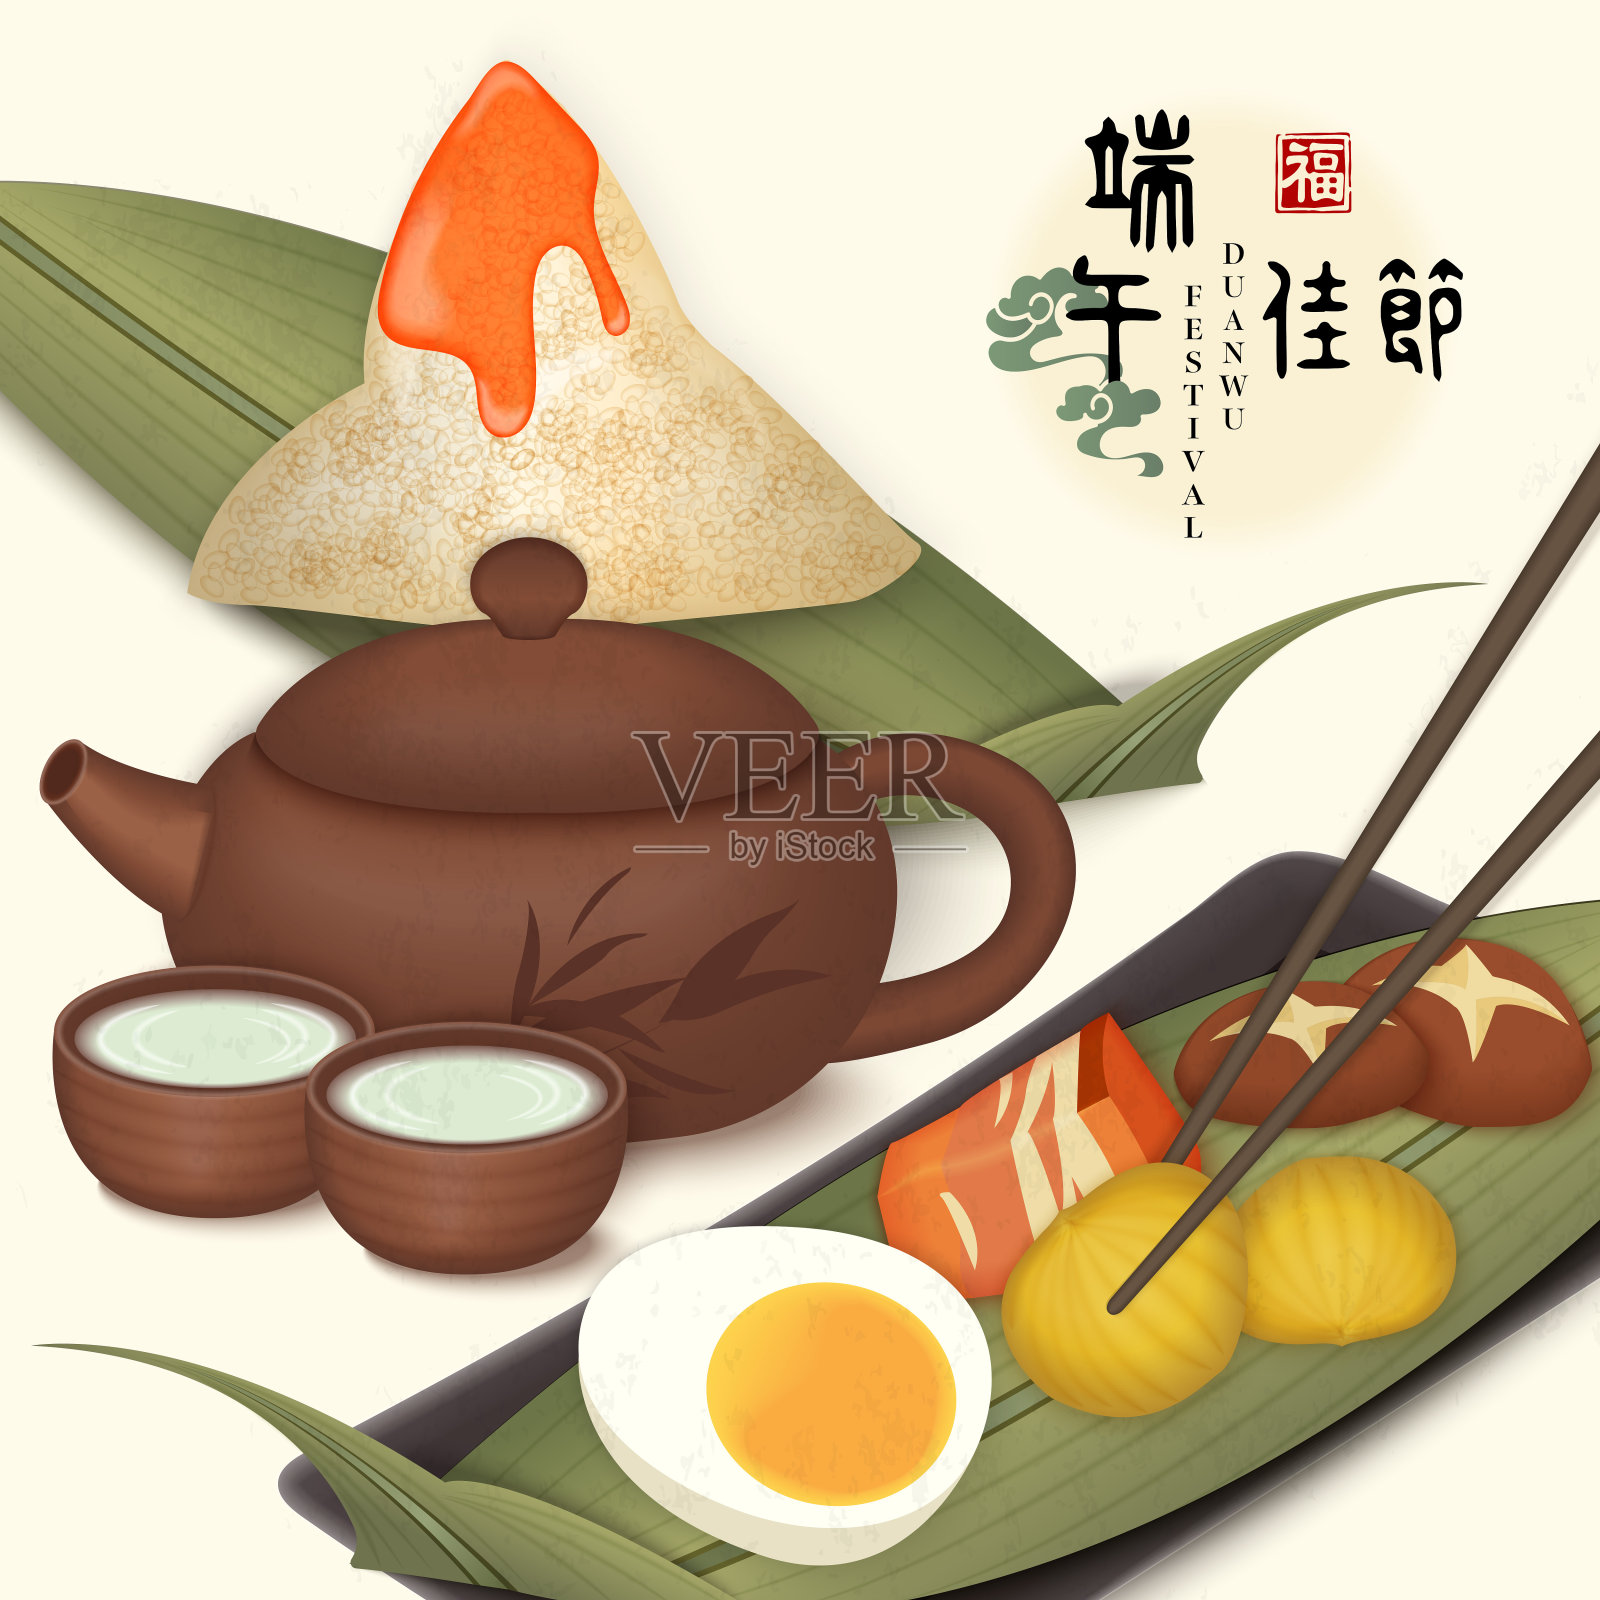 端午节快乐的背景模板传统食物粽子、香菇五花肉、咸鸭蛋、栗子和茶壶杯。中文翻译:端午和祝福。设计模板素材